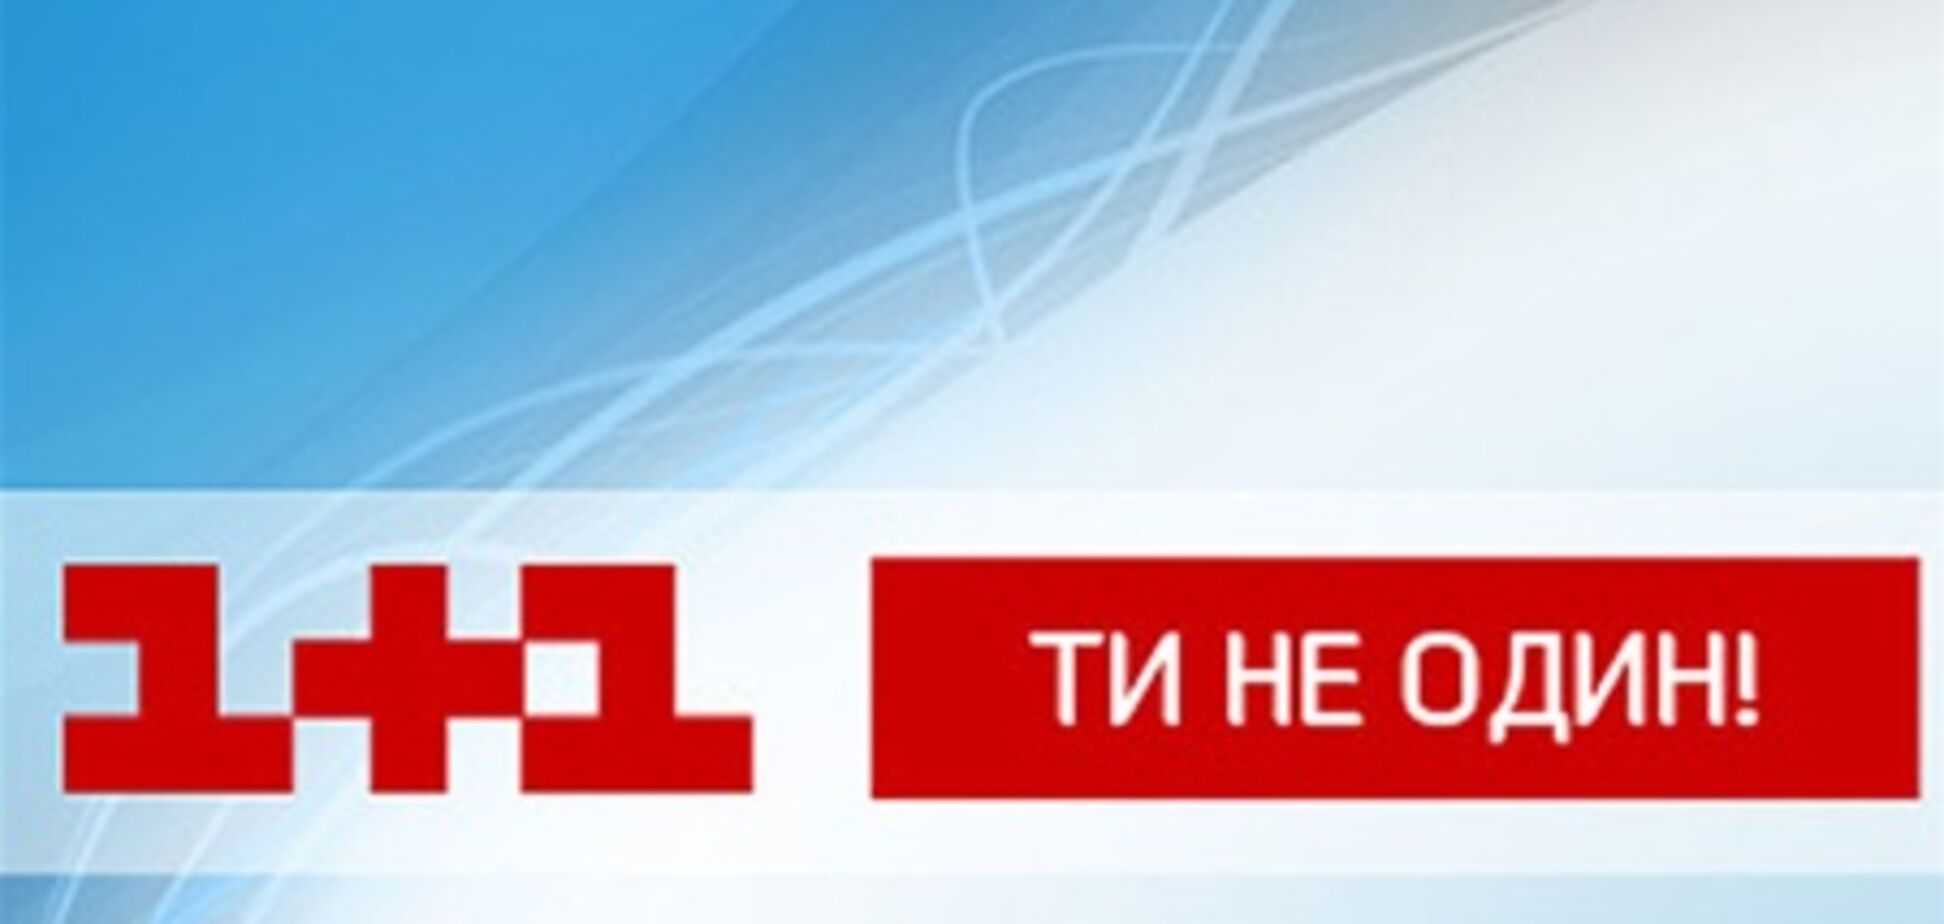 Телеканал 'Украина' не будет показывать матч 'Боруссия' - 'Шахтер'